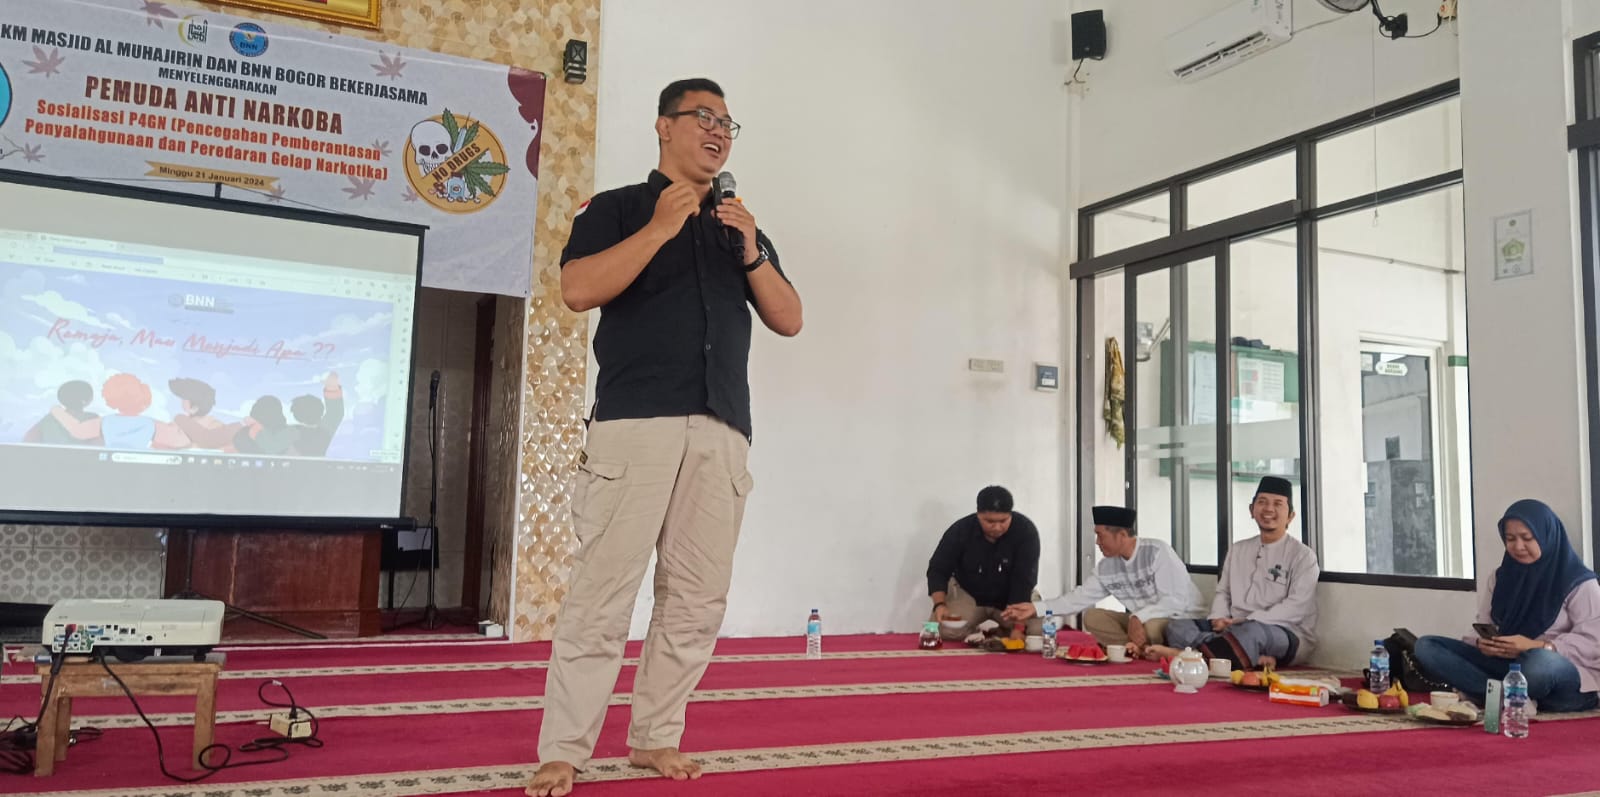 DKM Al Muhajirin Perumahan de Paris Residence bersama BNNK Bogor mengadakan seminar narkoba. (Istimewa/Bogordaily.net)